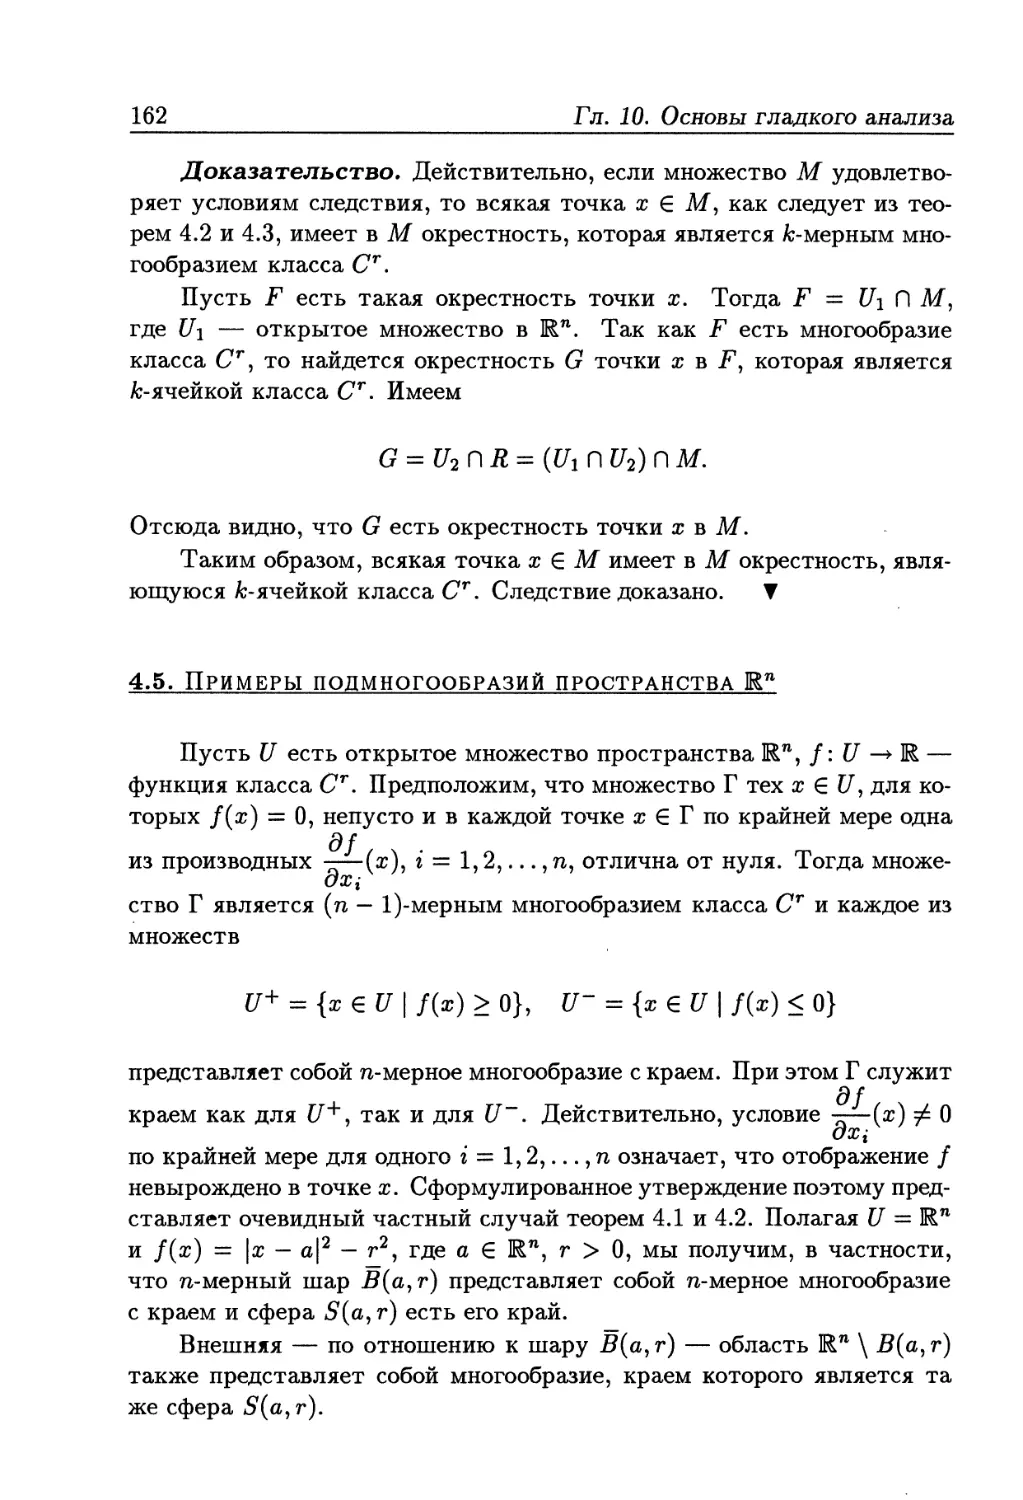 4.5. Примеры подмногообразий пространства R^n